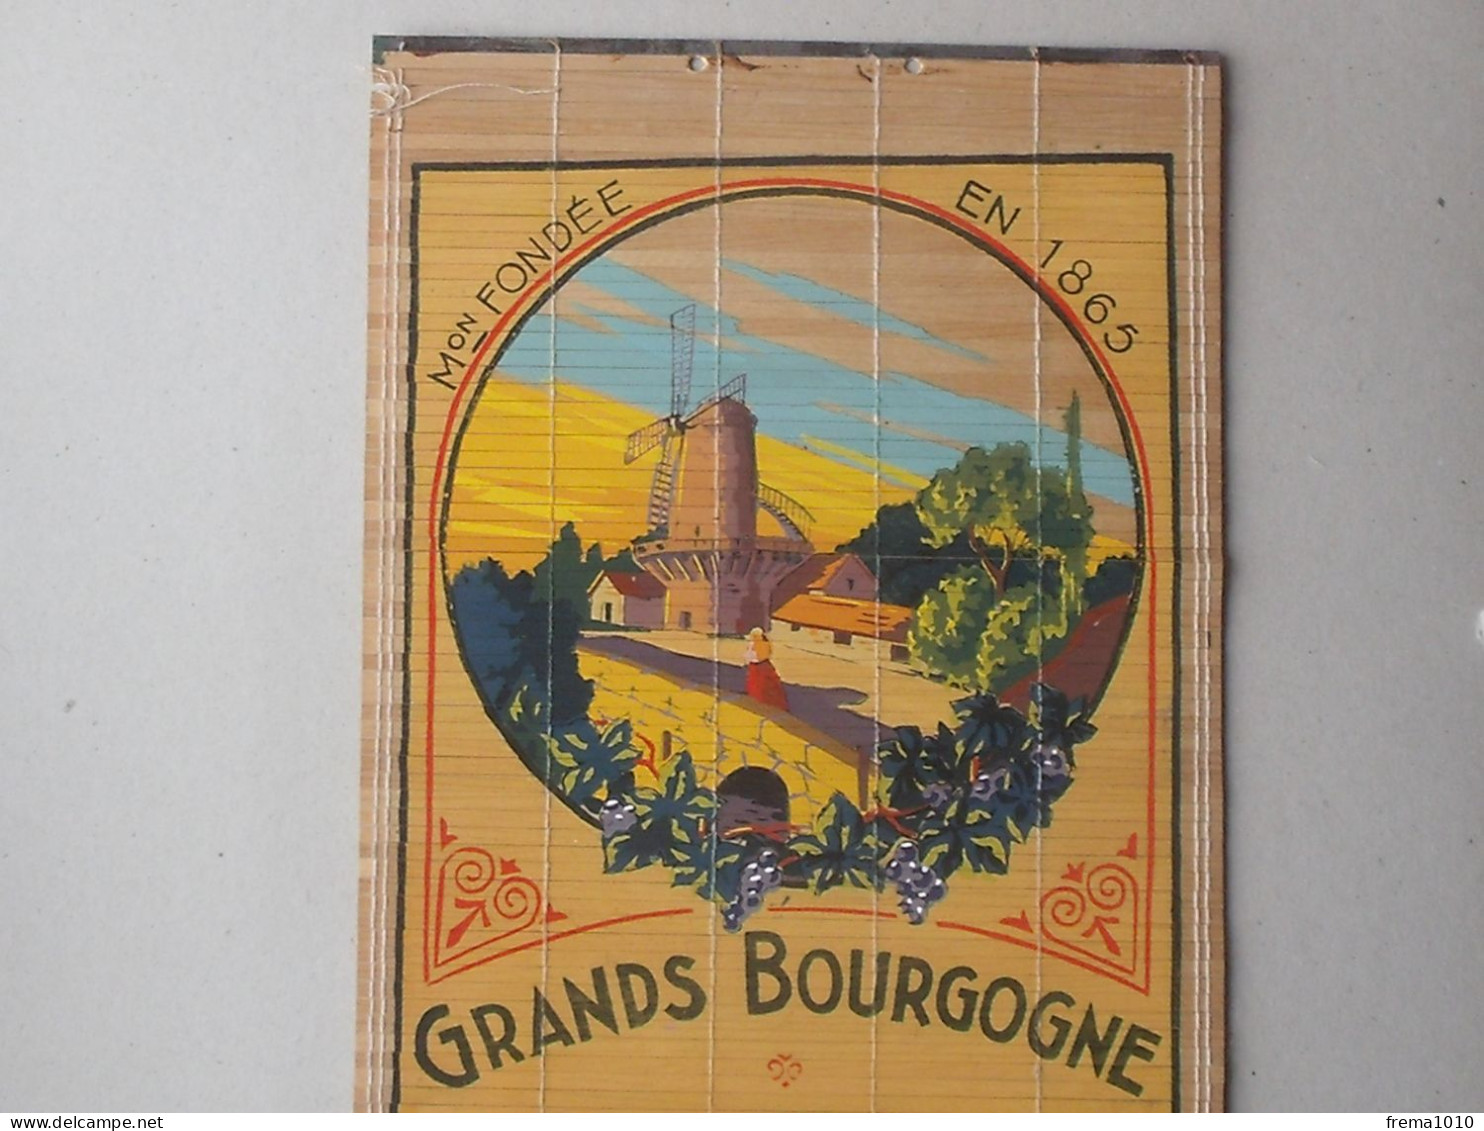 ROMANECHE-THORENS CHENAS: Store Publicitaire Ancien VIN MOULIN A VENT Bourgogne MACONNAIS Propr. JAMBON 1865 ROQUIN - Alcolici